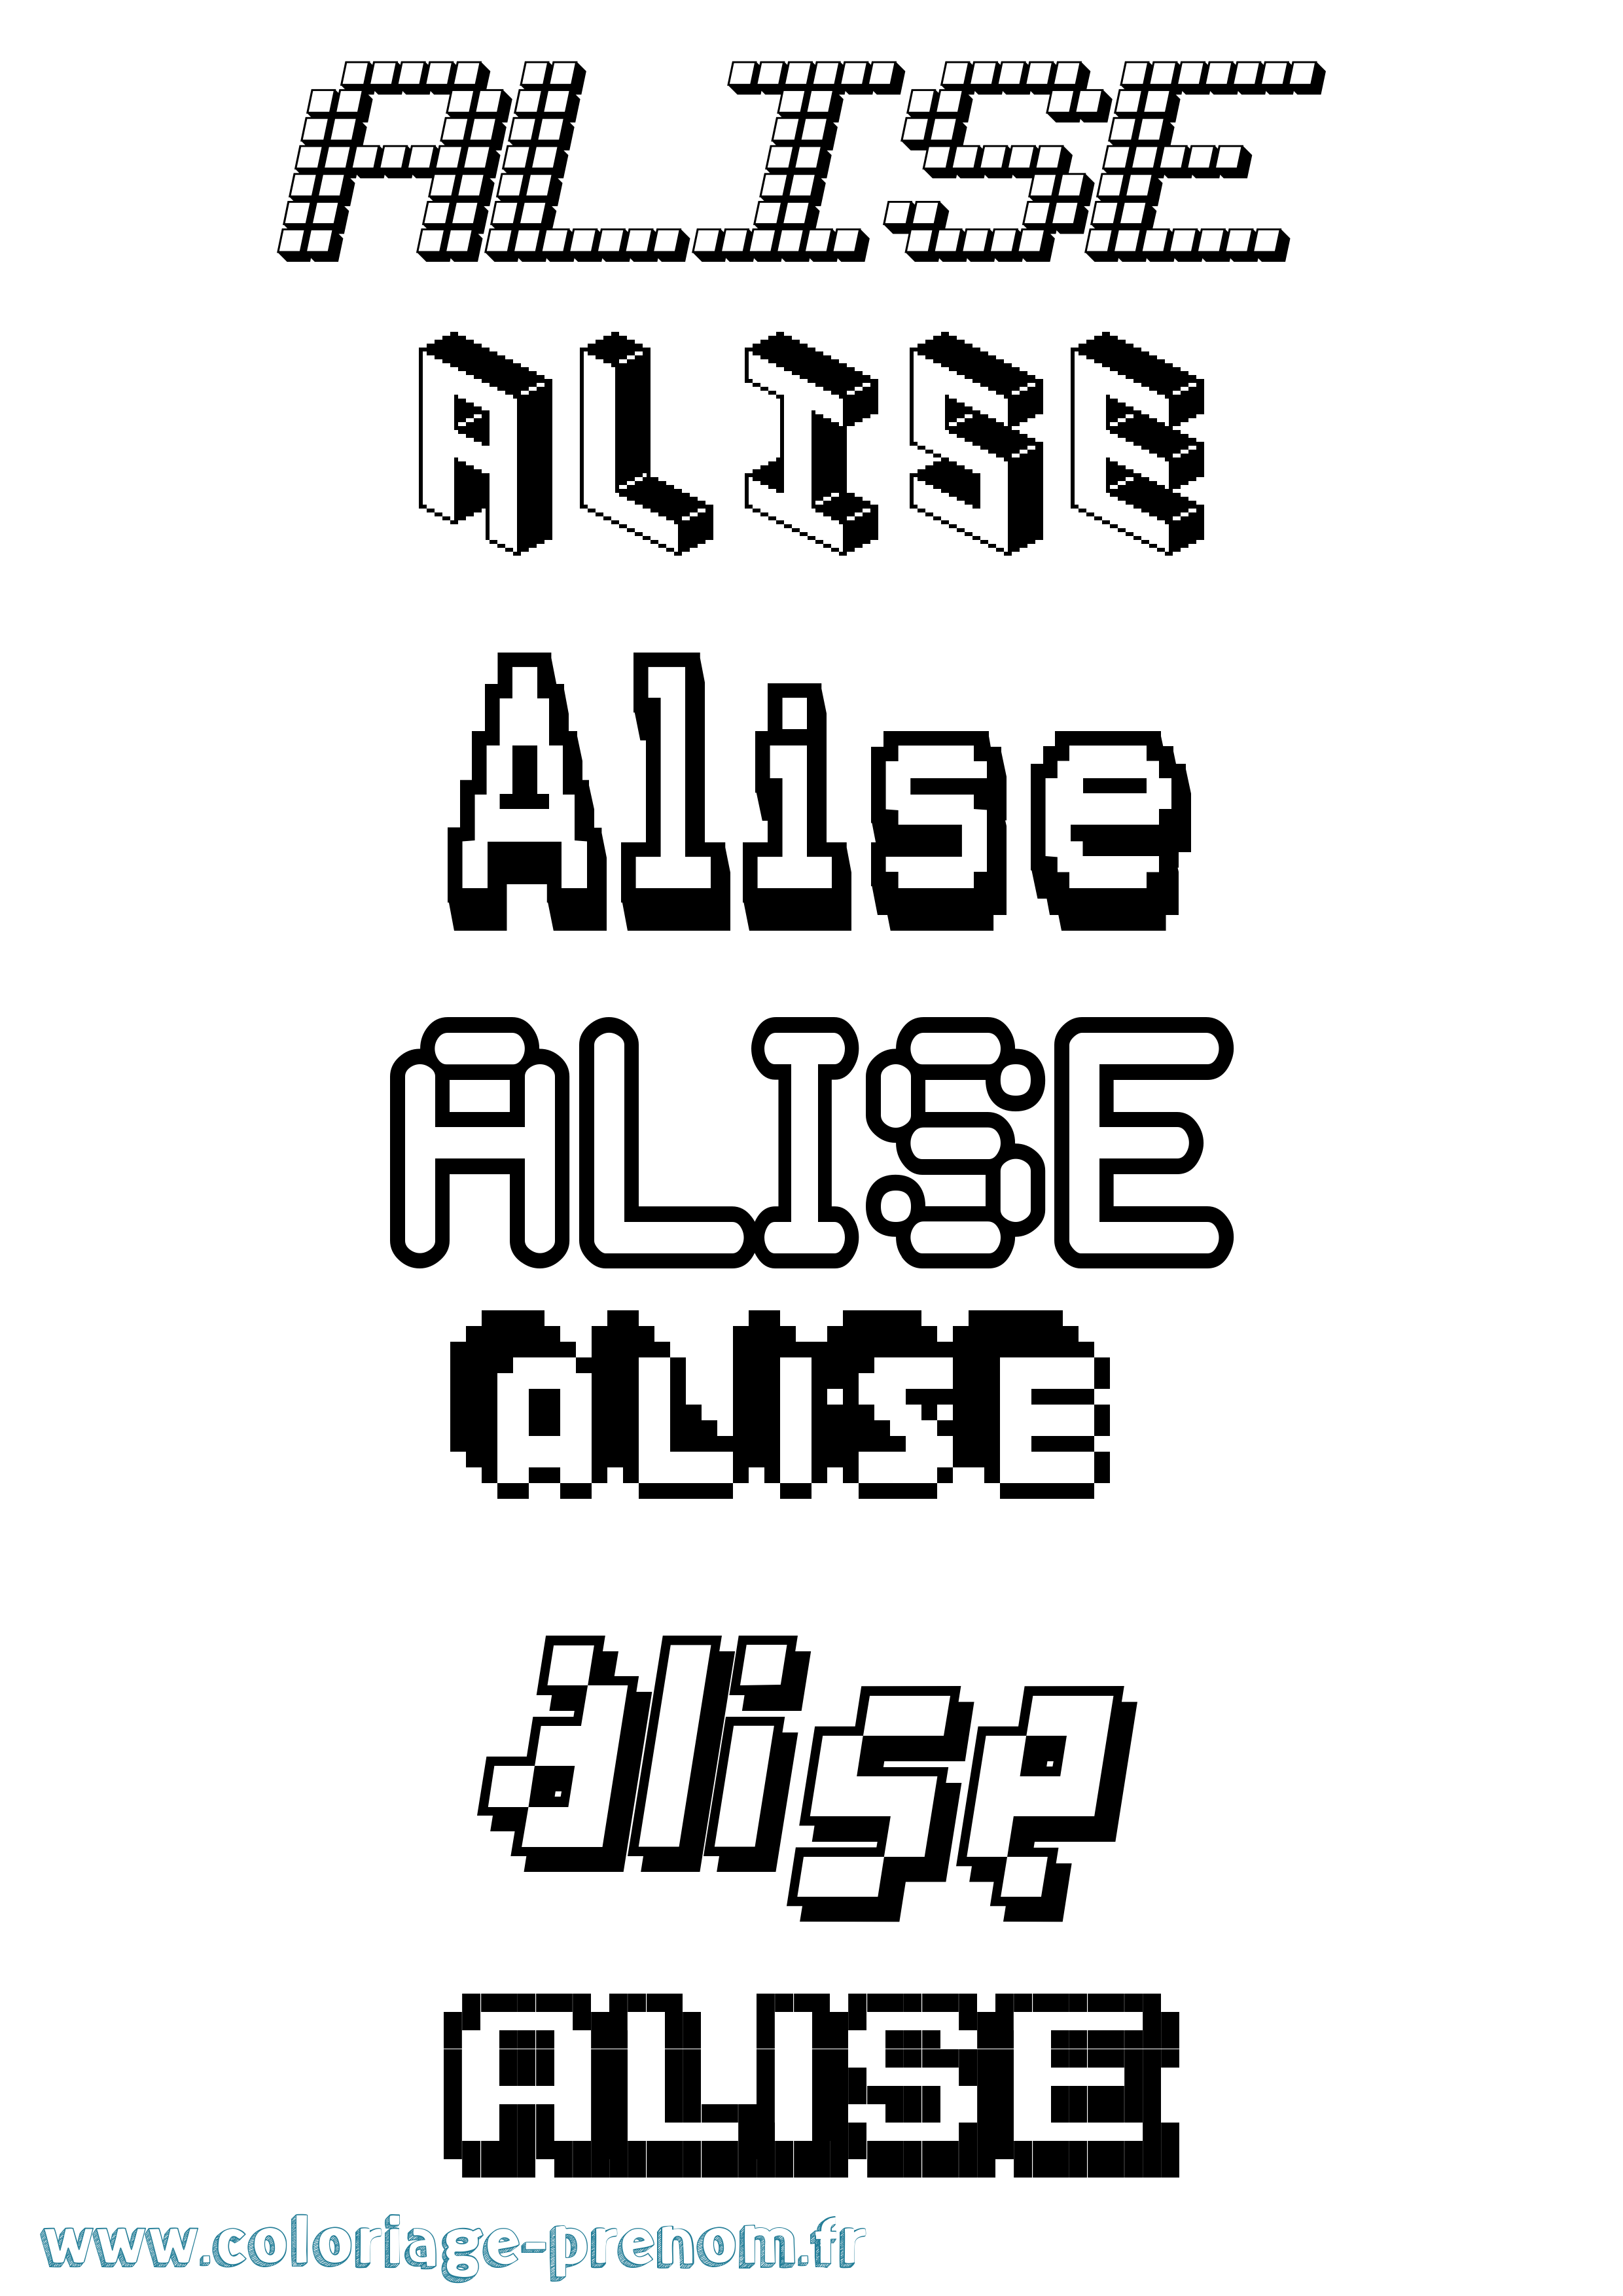 Coloriage prénom Alise Pixel